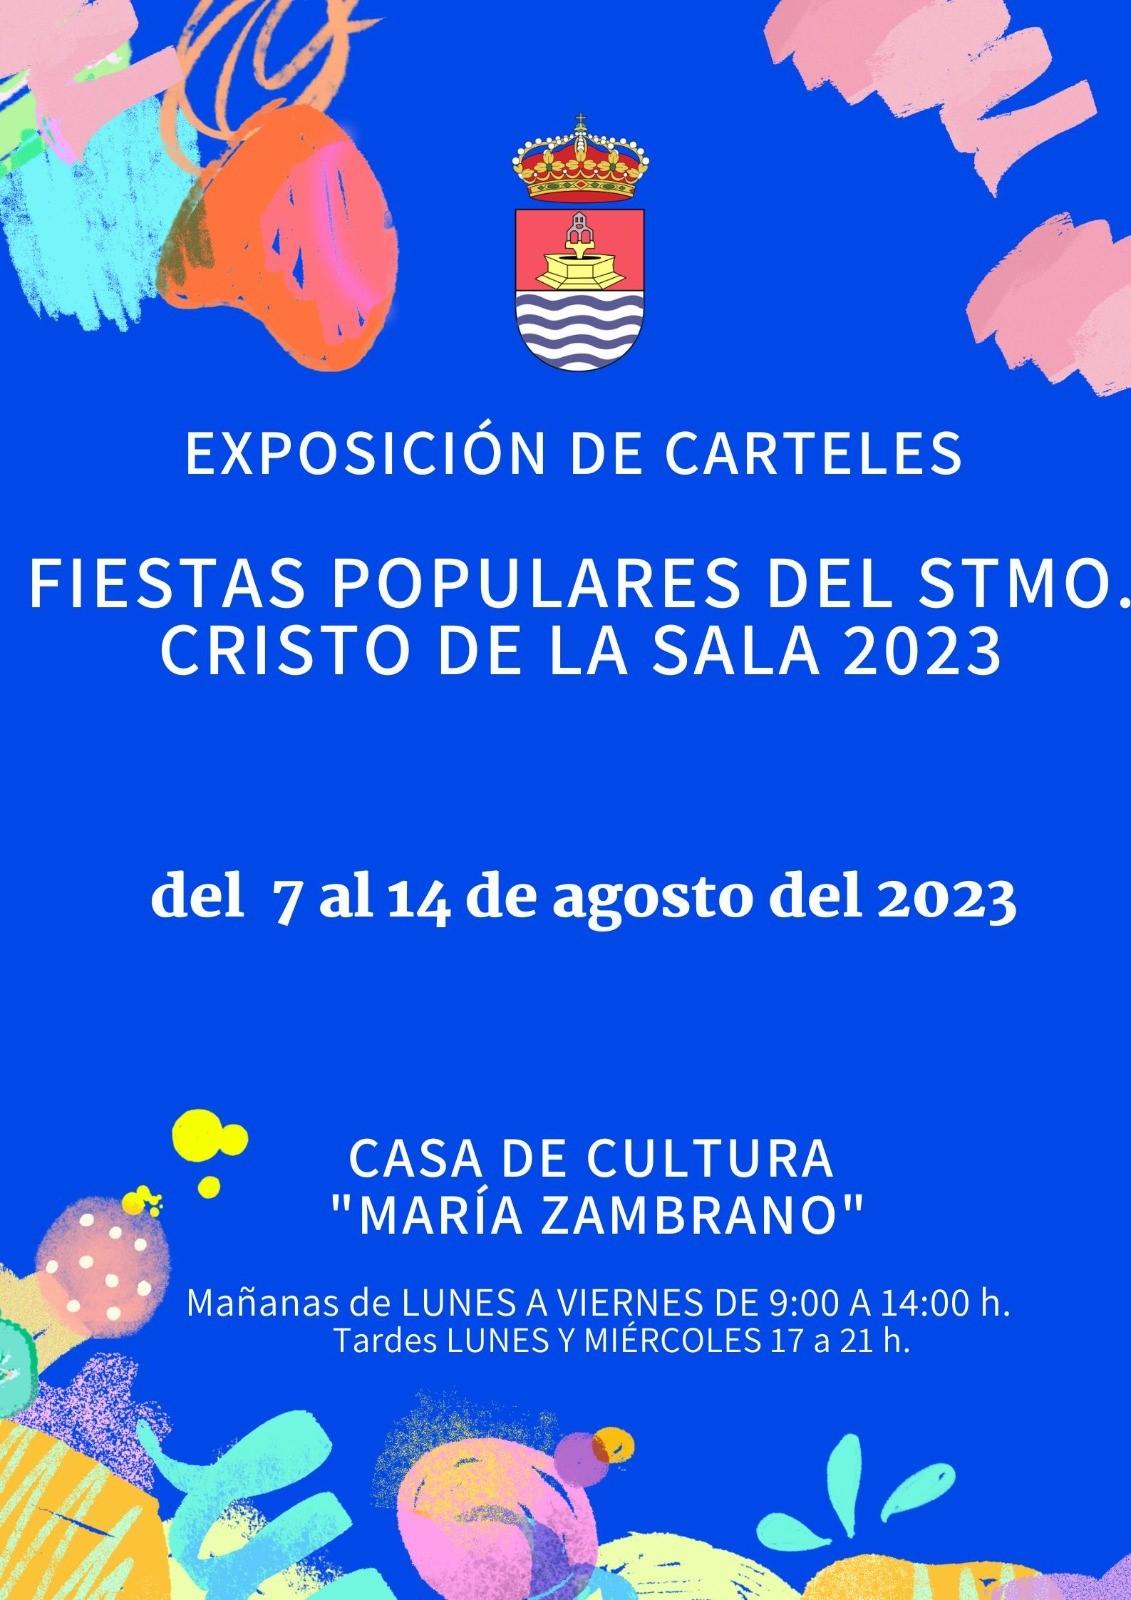 Exposición de Carteles de las Fiestas Populares en honor del Stmo. Cristo de la Sala 2023